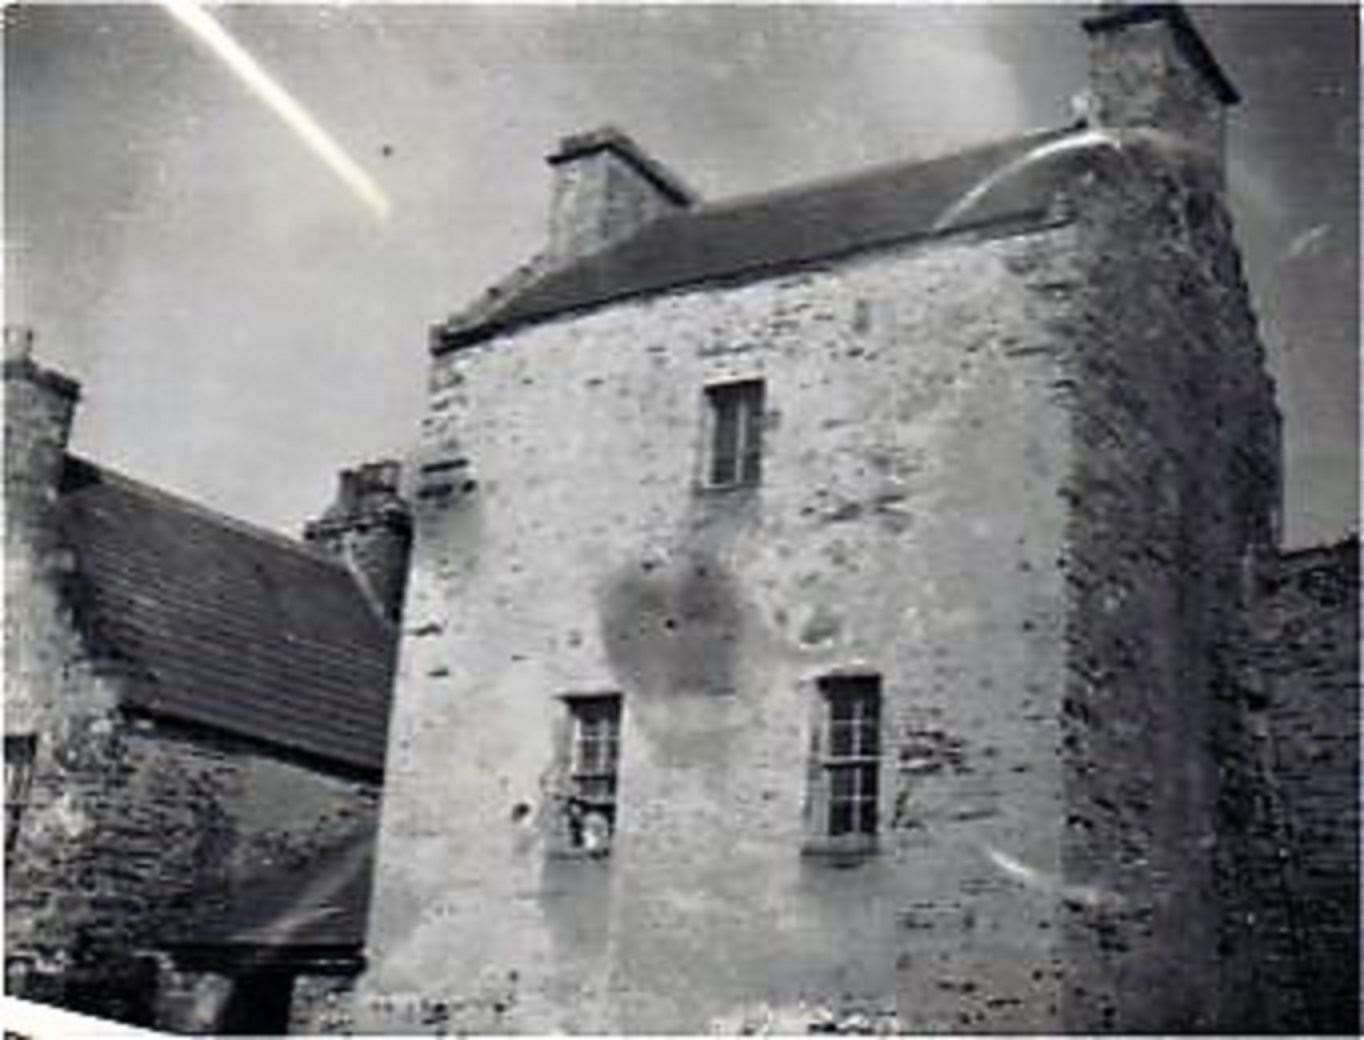 Brims Castle as it was in 1910.